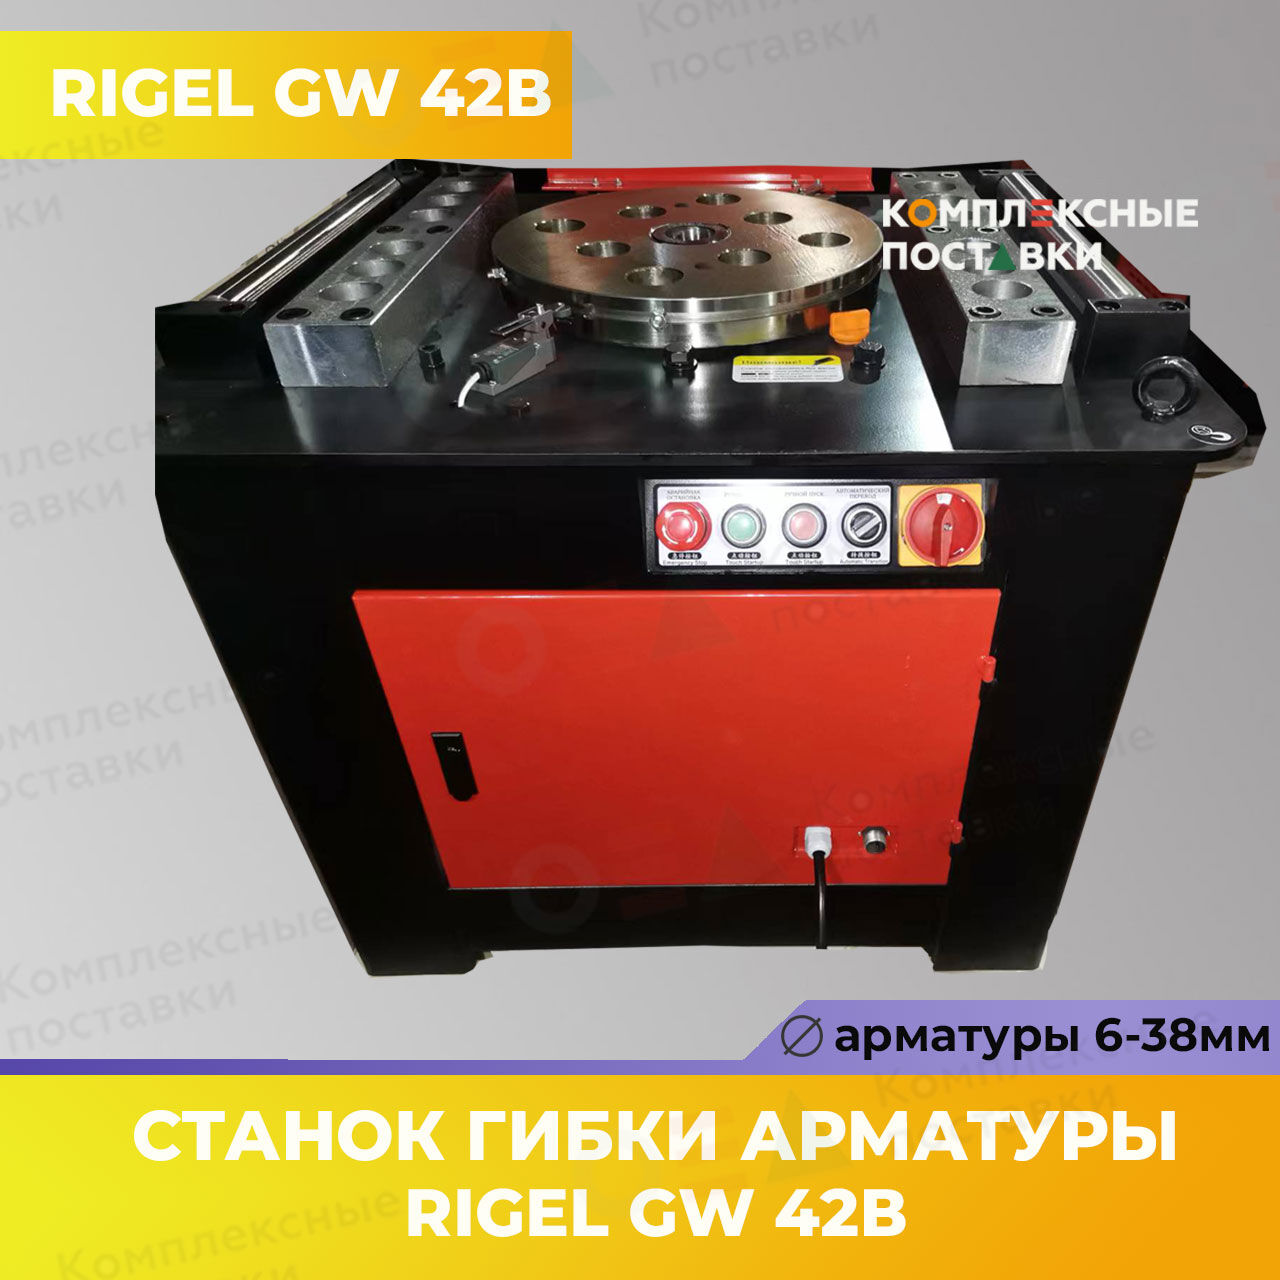 Станок для гибки арматуры GW 42В  Rigel 6-32мм купить в Комплексные Поставки 1